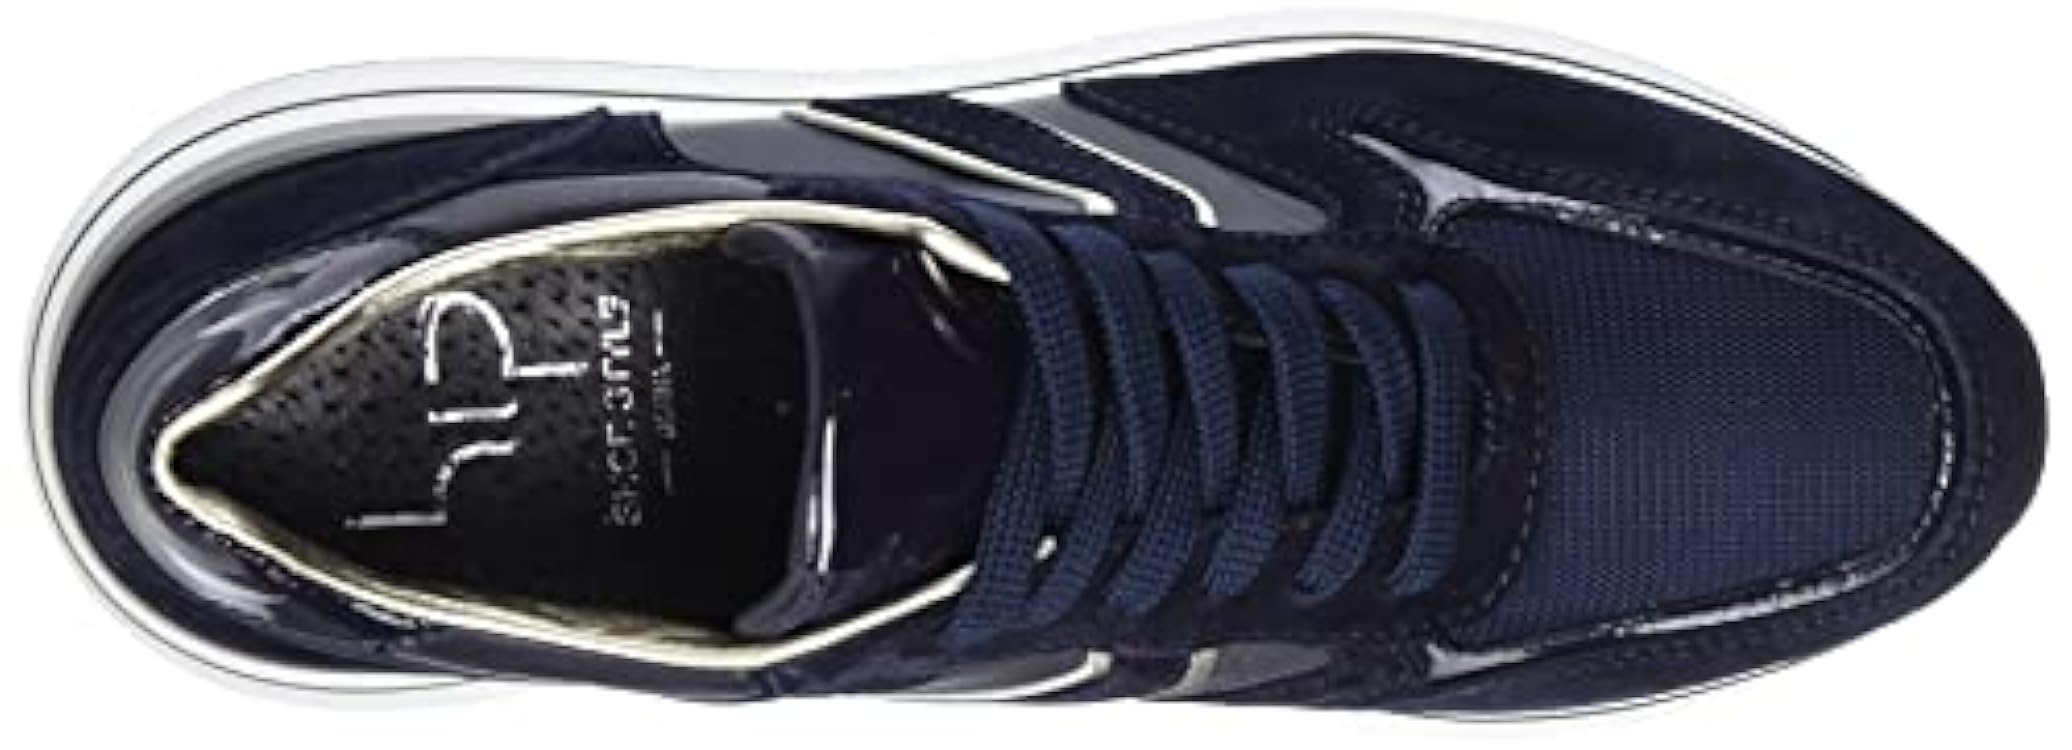 HIP Shoe Style for Women Hip Donna D1201, Scarpe da Ginnastica, Dark Blue Platinum, 37 EU 090496682